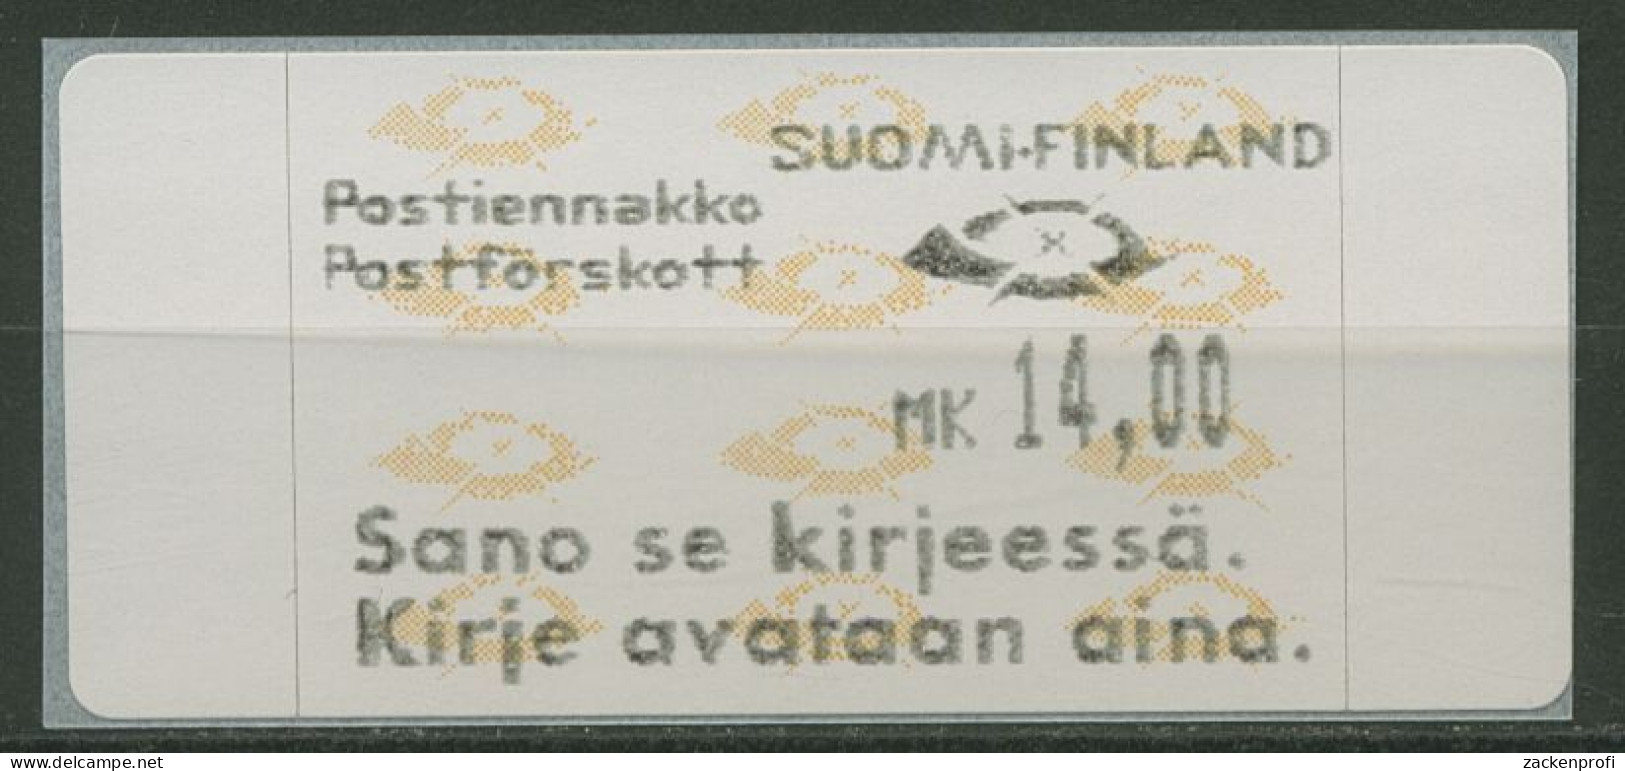 Finnland ATM 1993 Posthörner Einzelwert ATM 12.6 Z5 Postfrisch - Machine Labels [ATM]